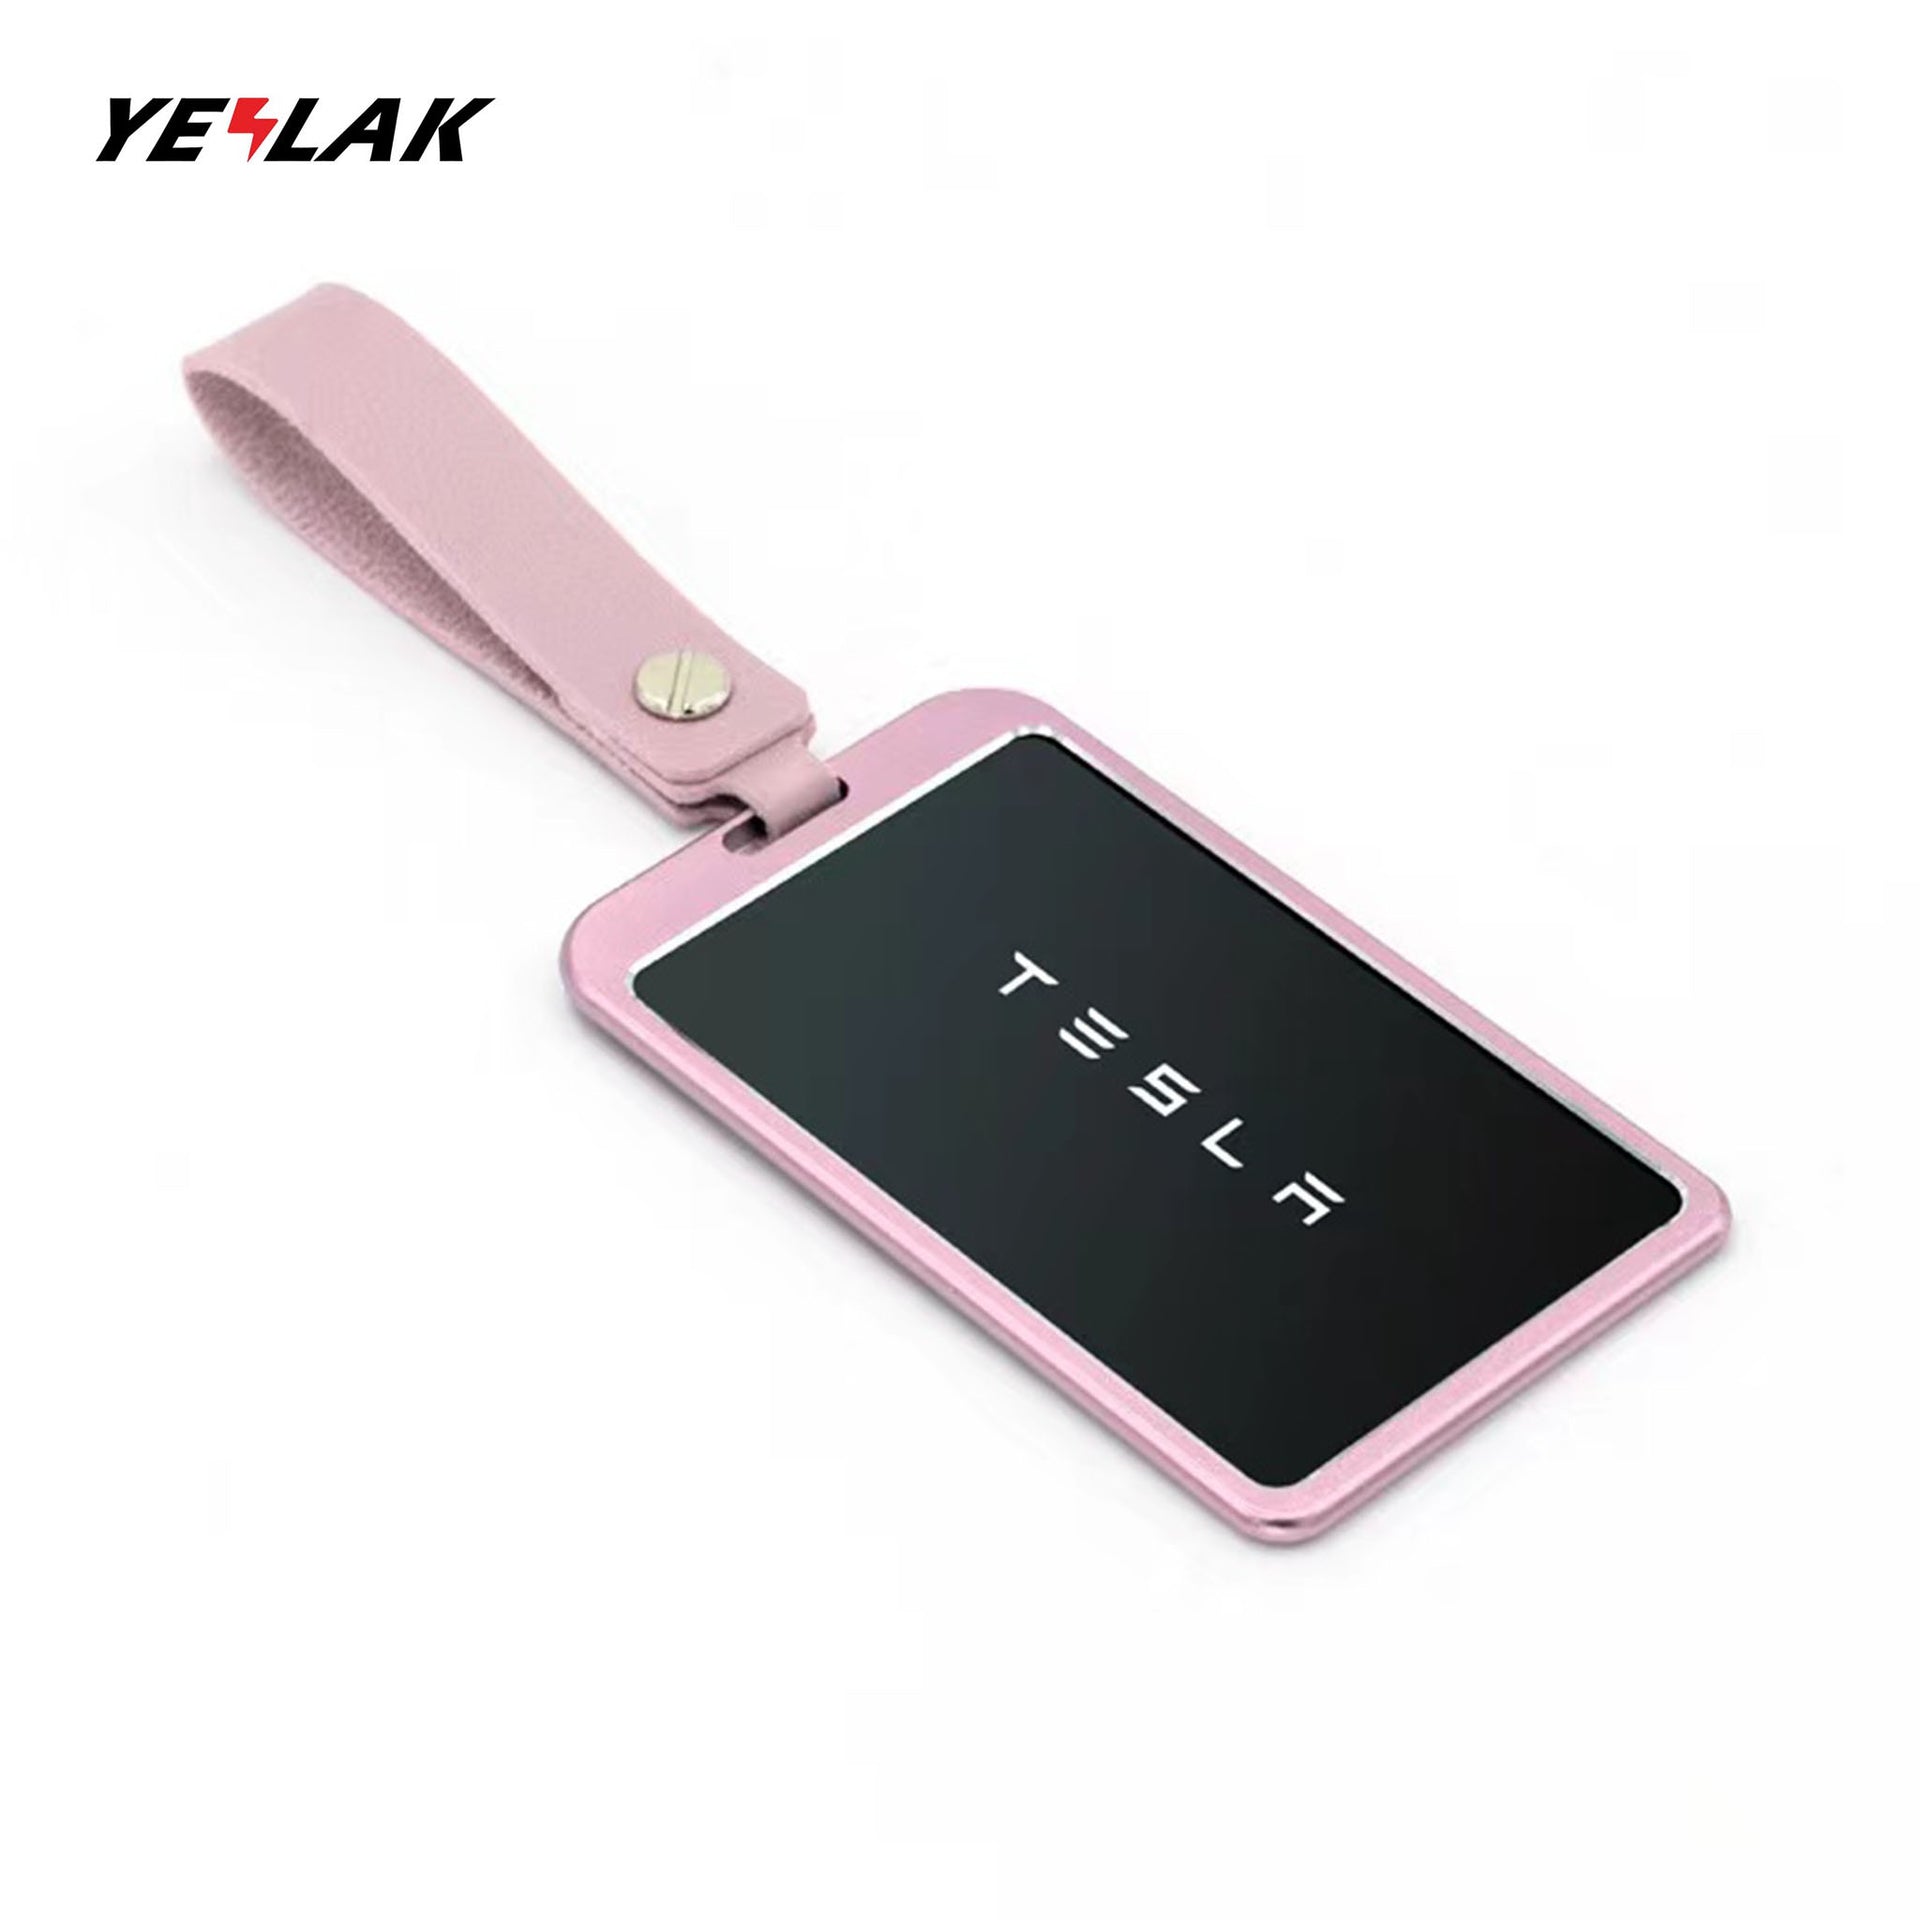 Silicone Key Card Holder Keychain for Tesla Model 3 Model Y - Flashark